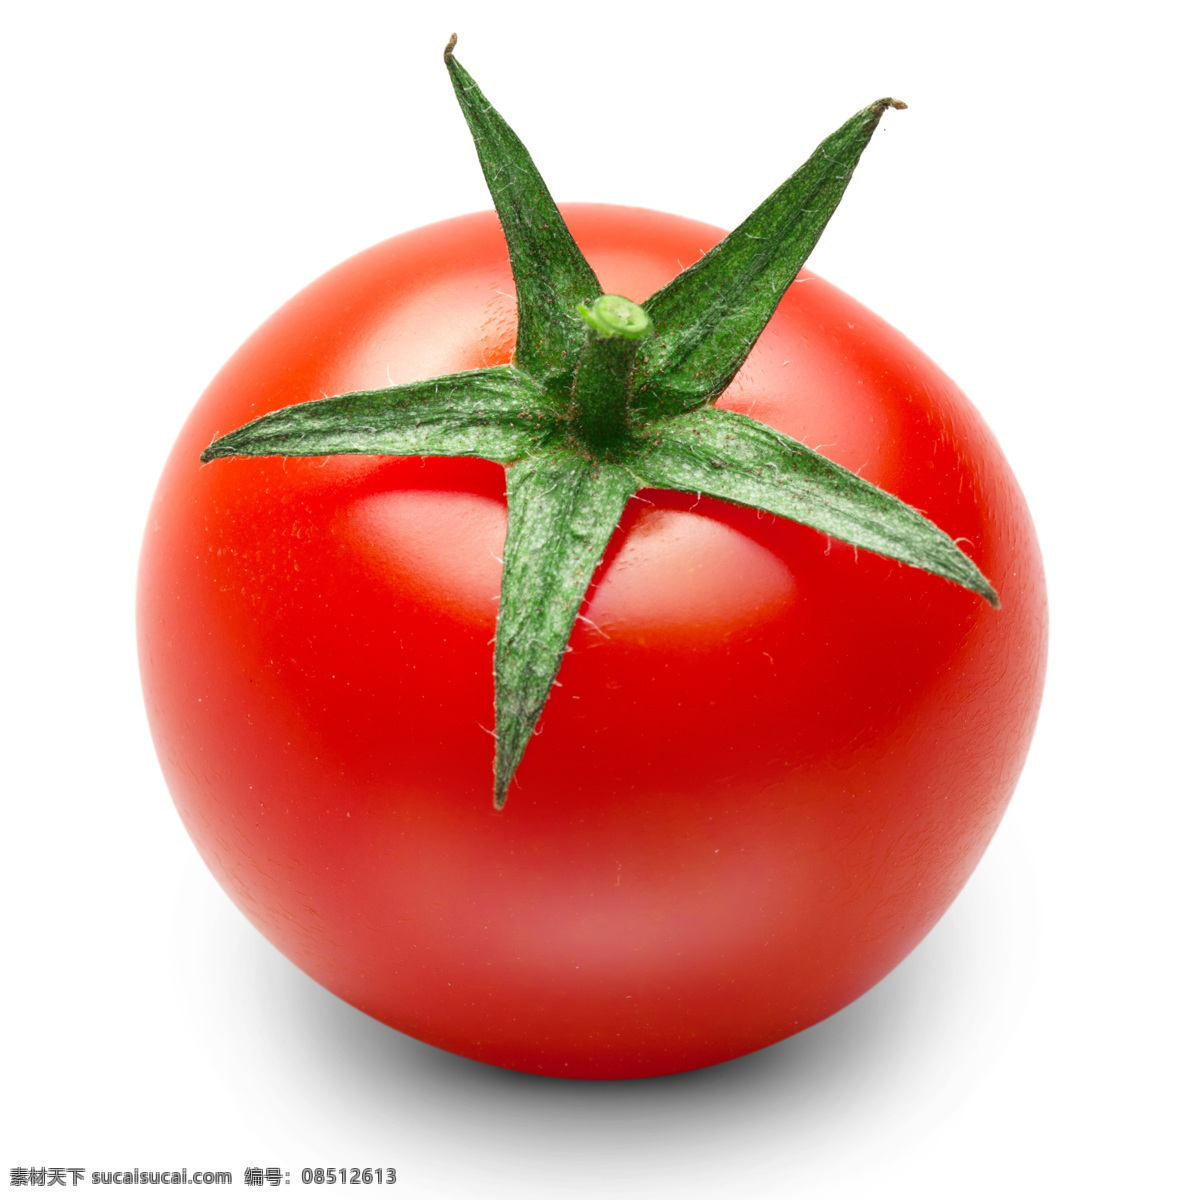 红色 番茄 西红柿 水果 绿叶 叶子